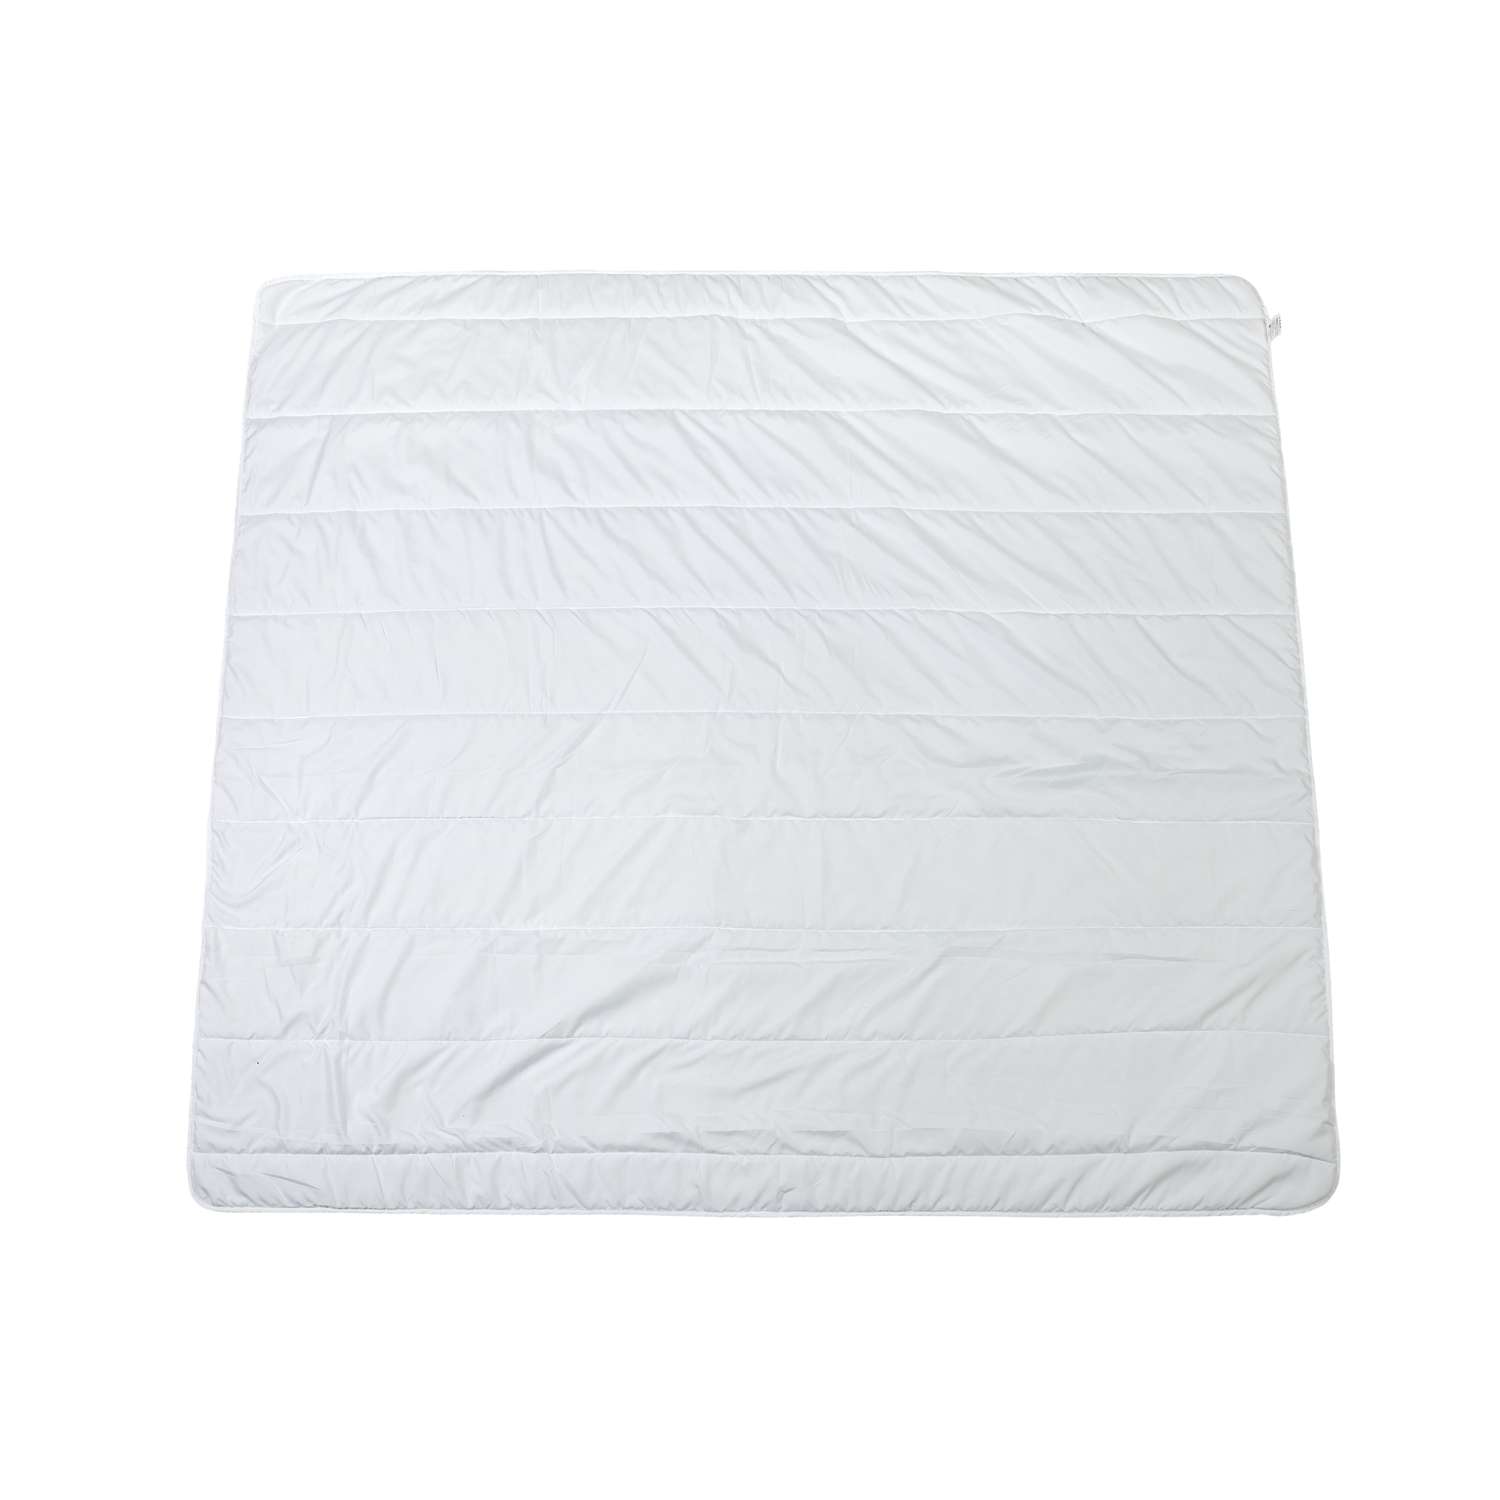 Одеяло Аскона / Askona Light Roll всесезонное 1.5 спальное 205х140 см - фото 2